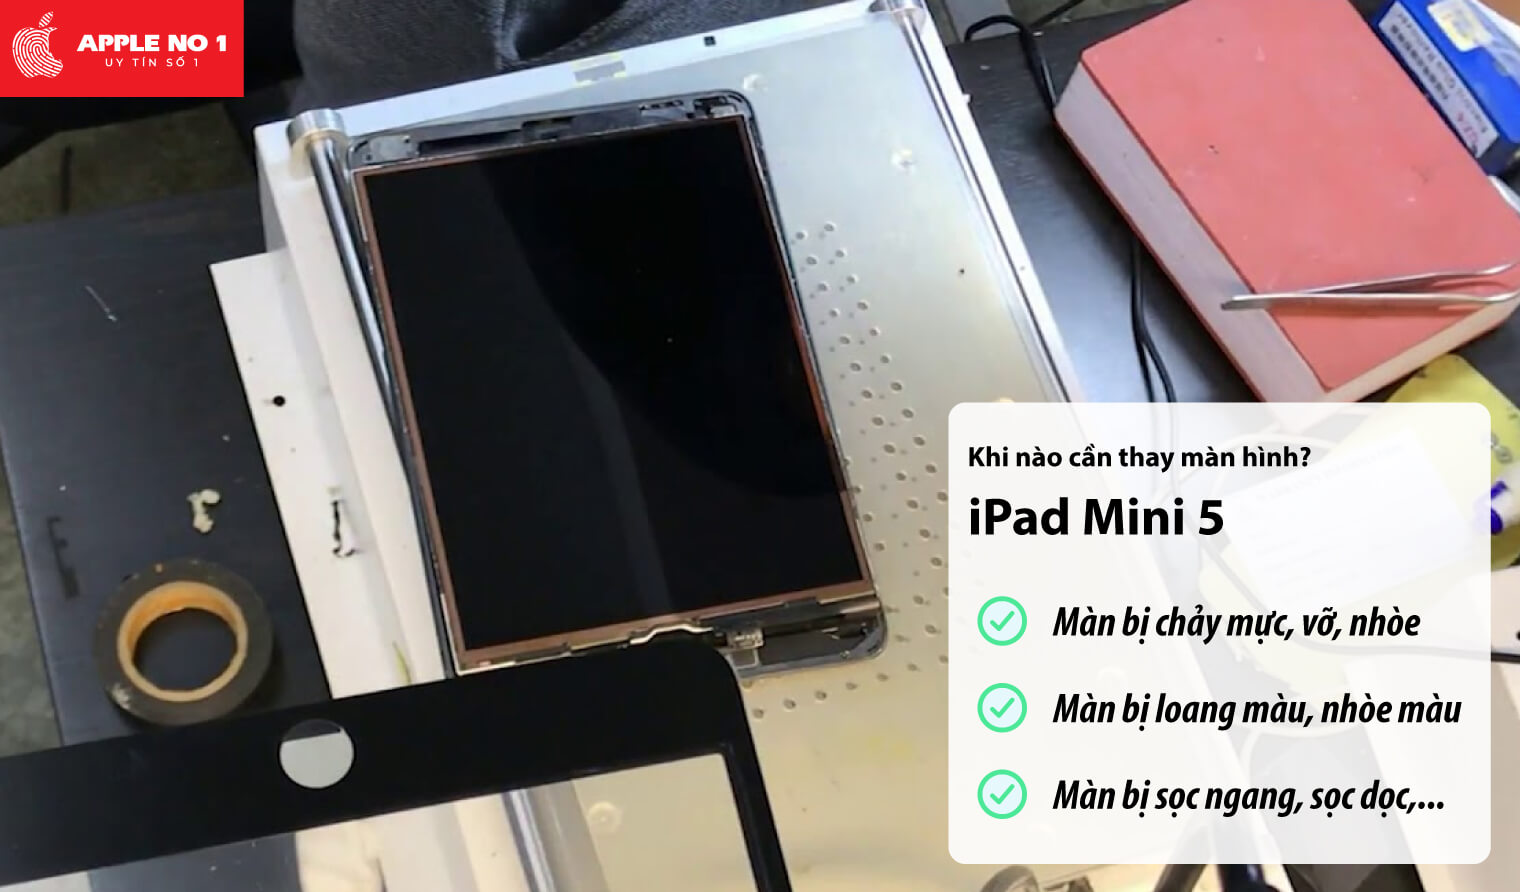 Thay màn hình iPad mini 5 khi nào?